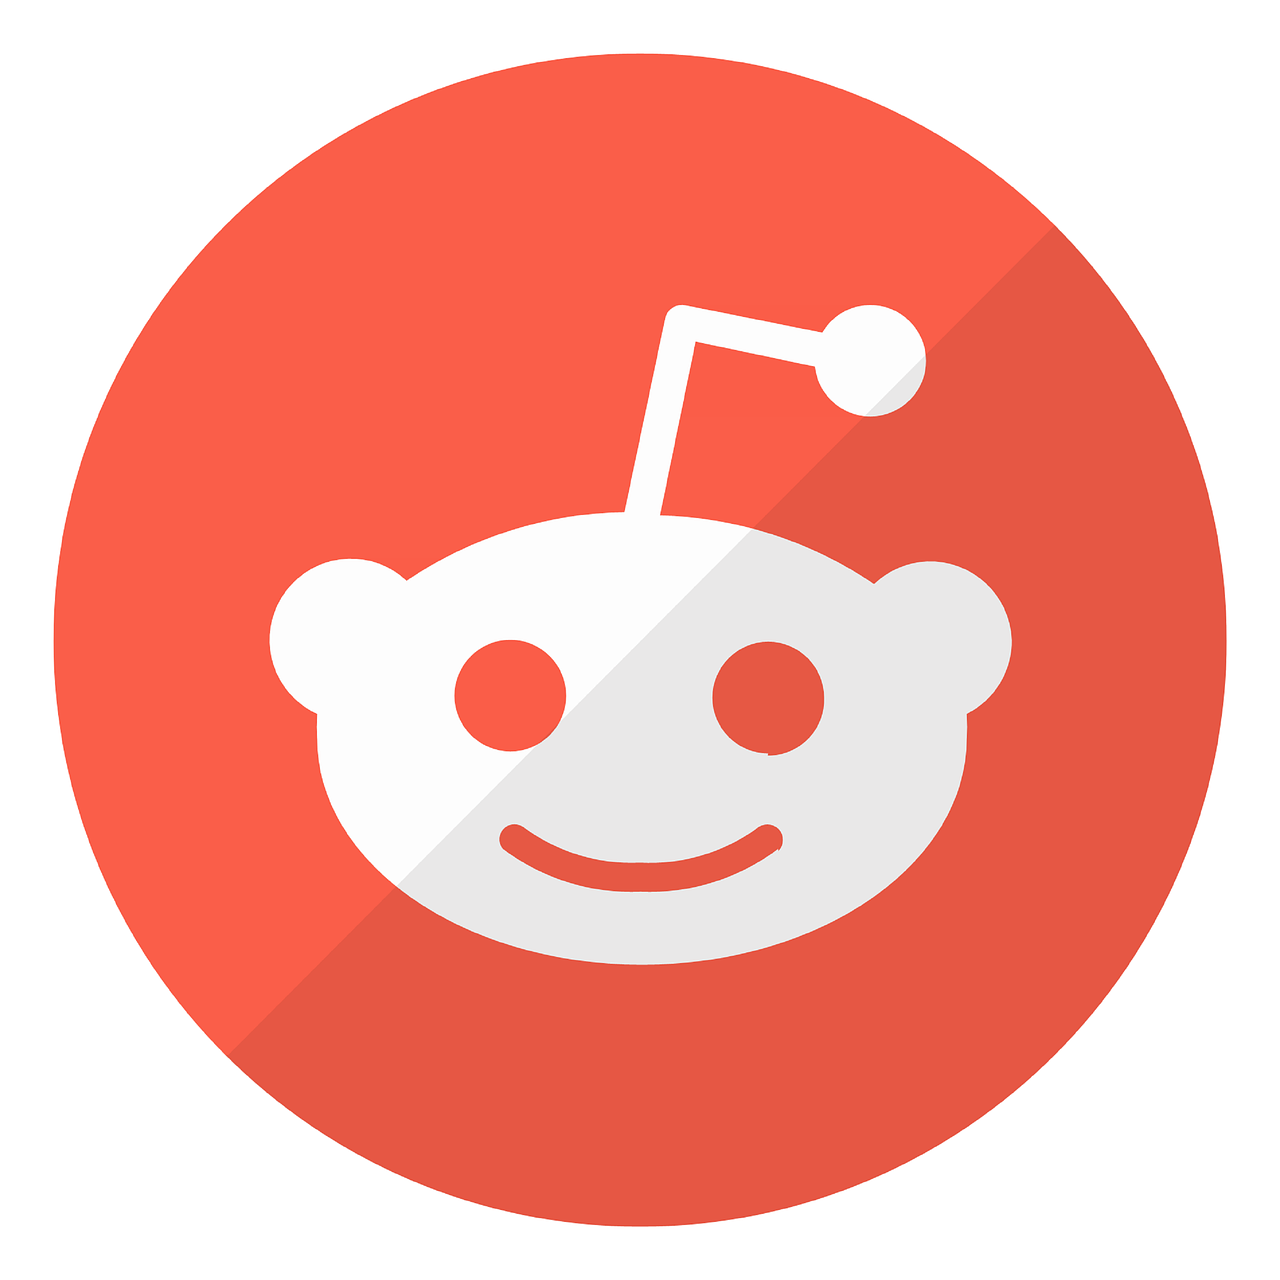 Free Reddit logo social illustration